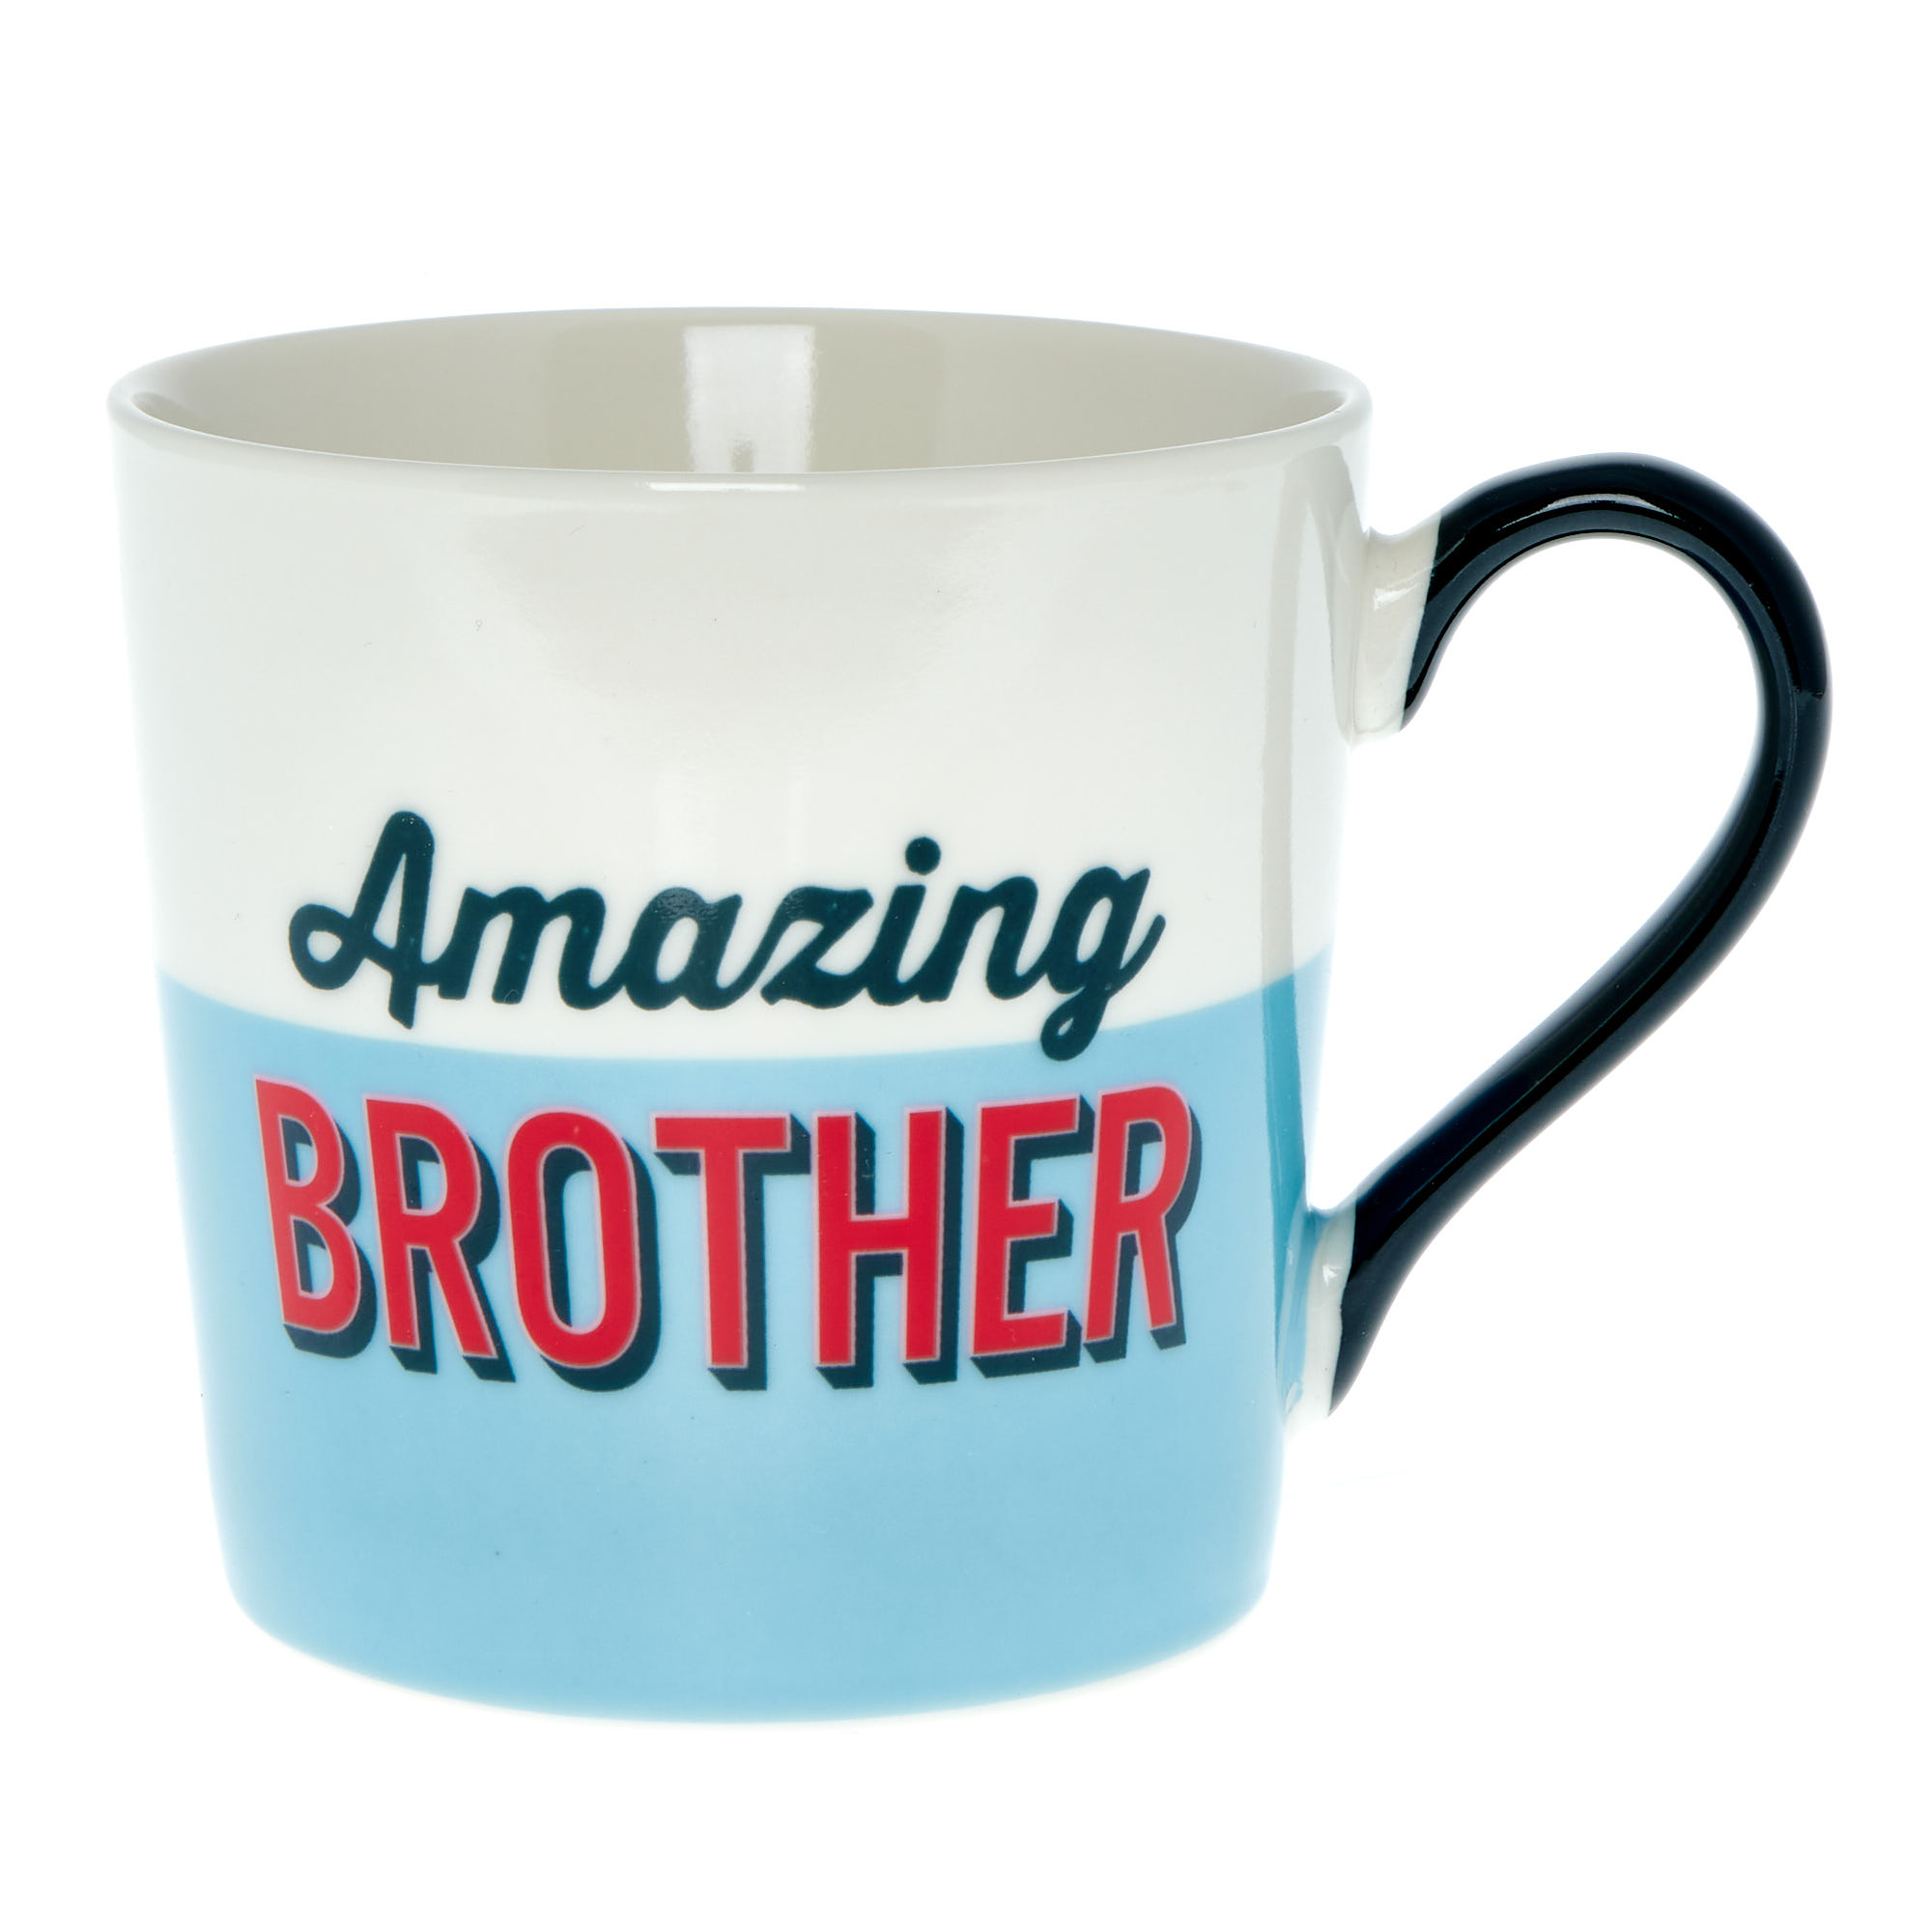 Amazing Brother Mug